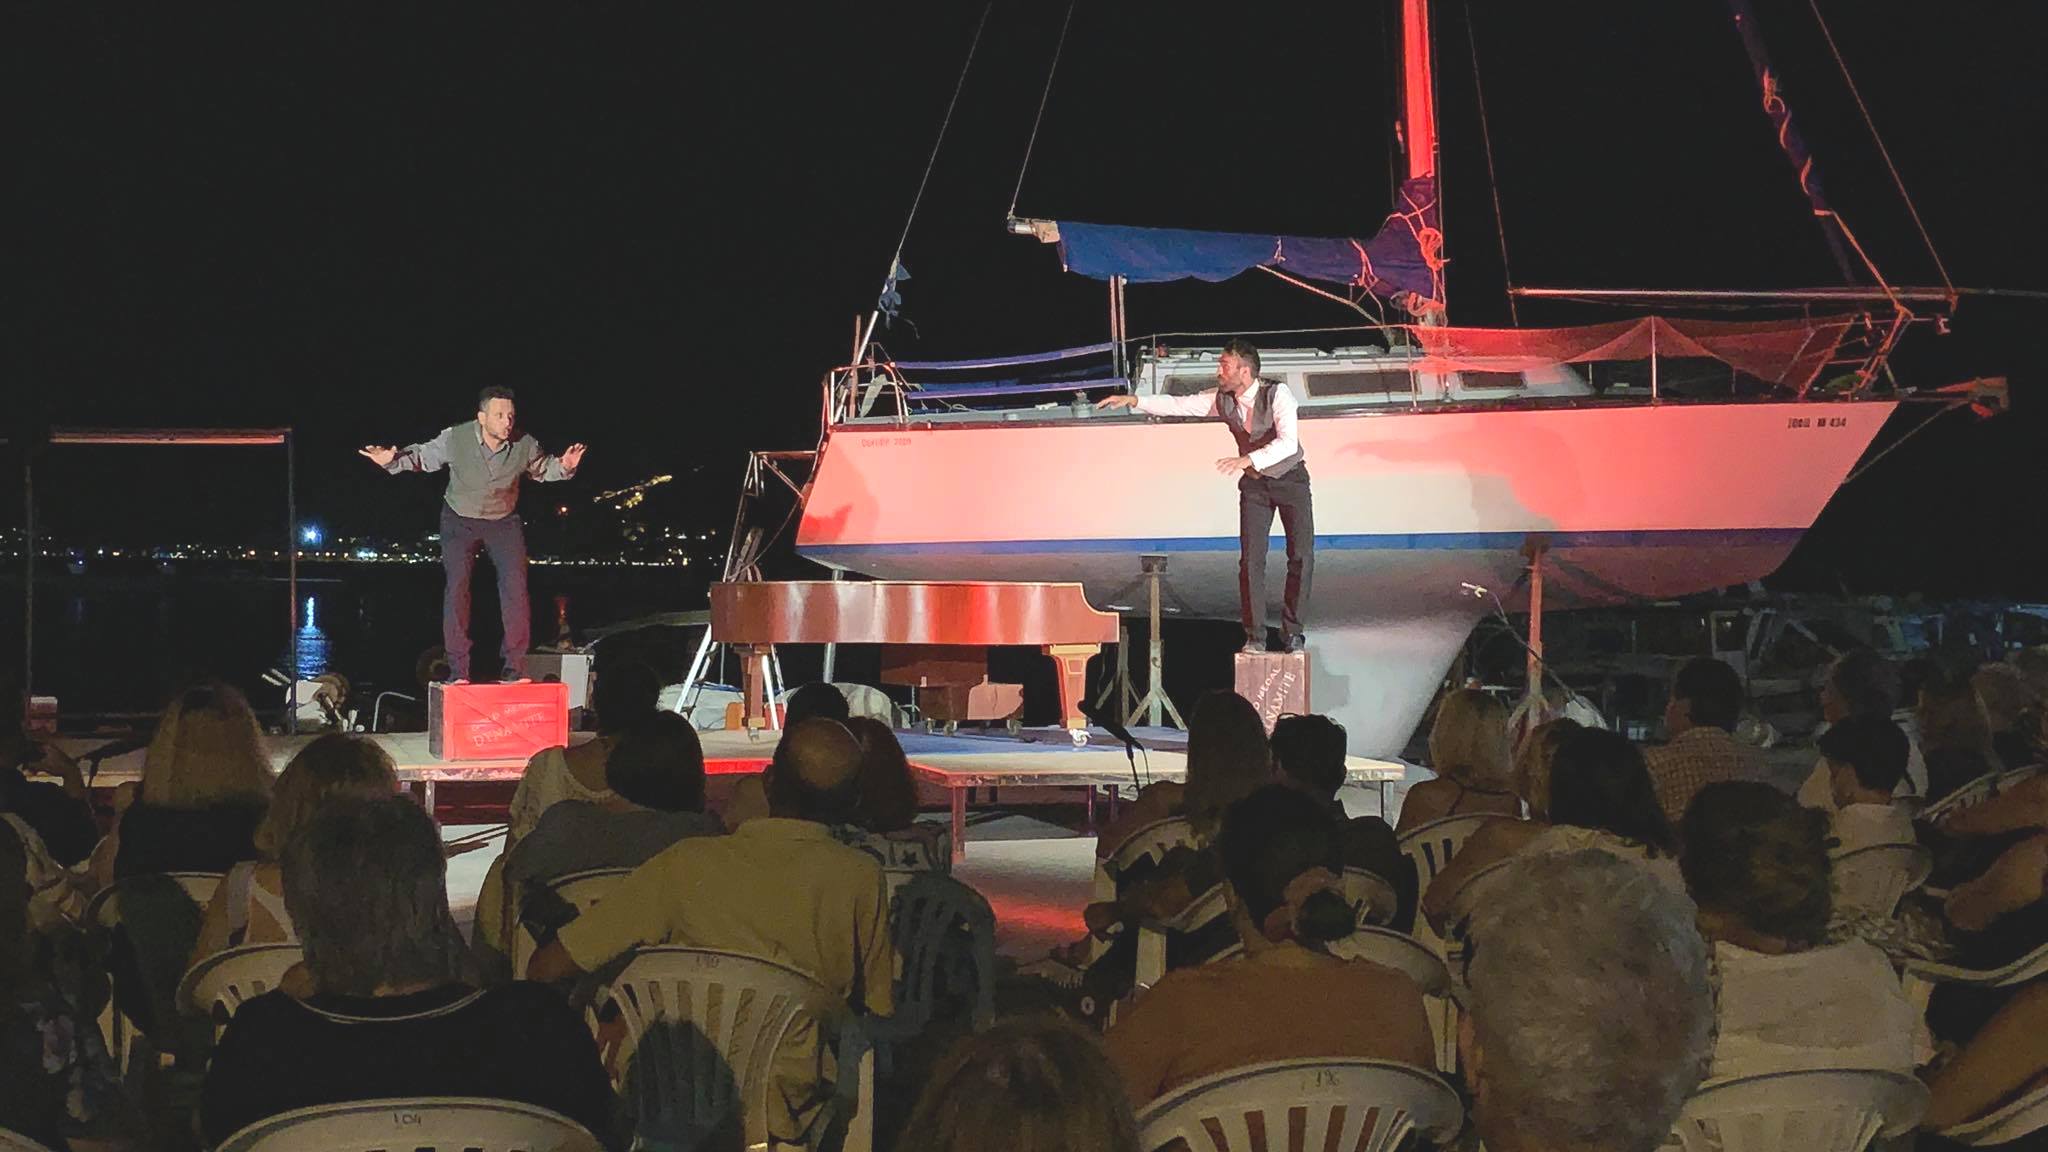 Νέα Κίος: Μια παράσταση πάνω στο κατάστρωμα ενός καραβιού